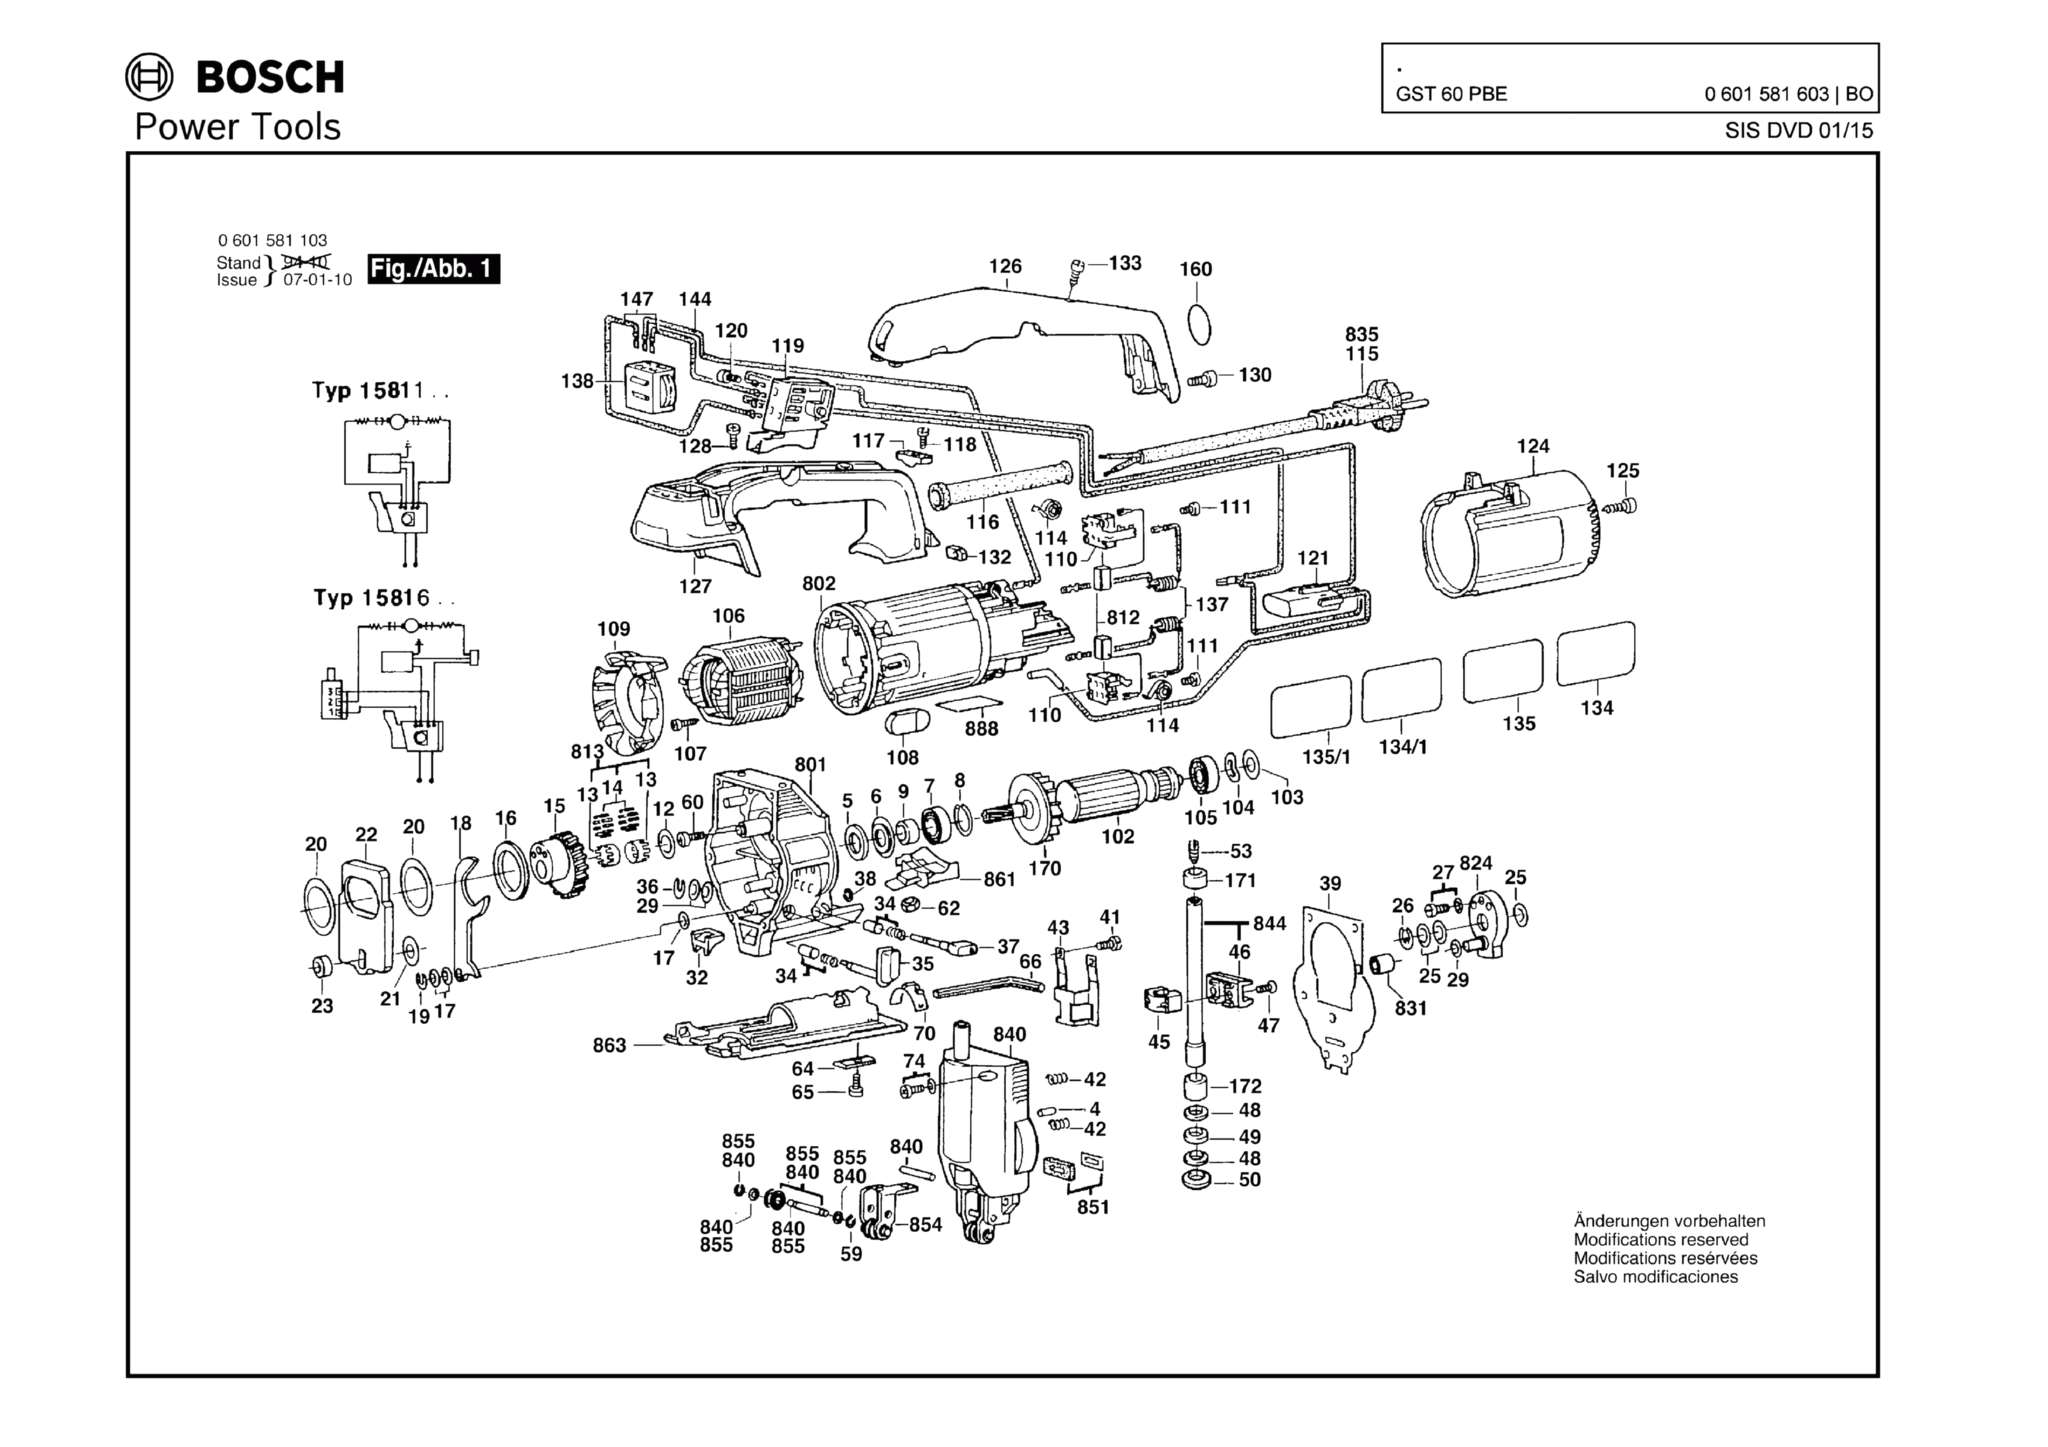 Запчасти, схема и деталировка Bosch GST 60 PBE (ТИП 0601581603)